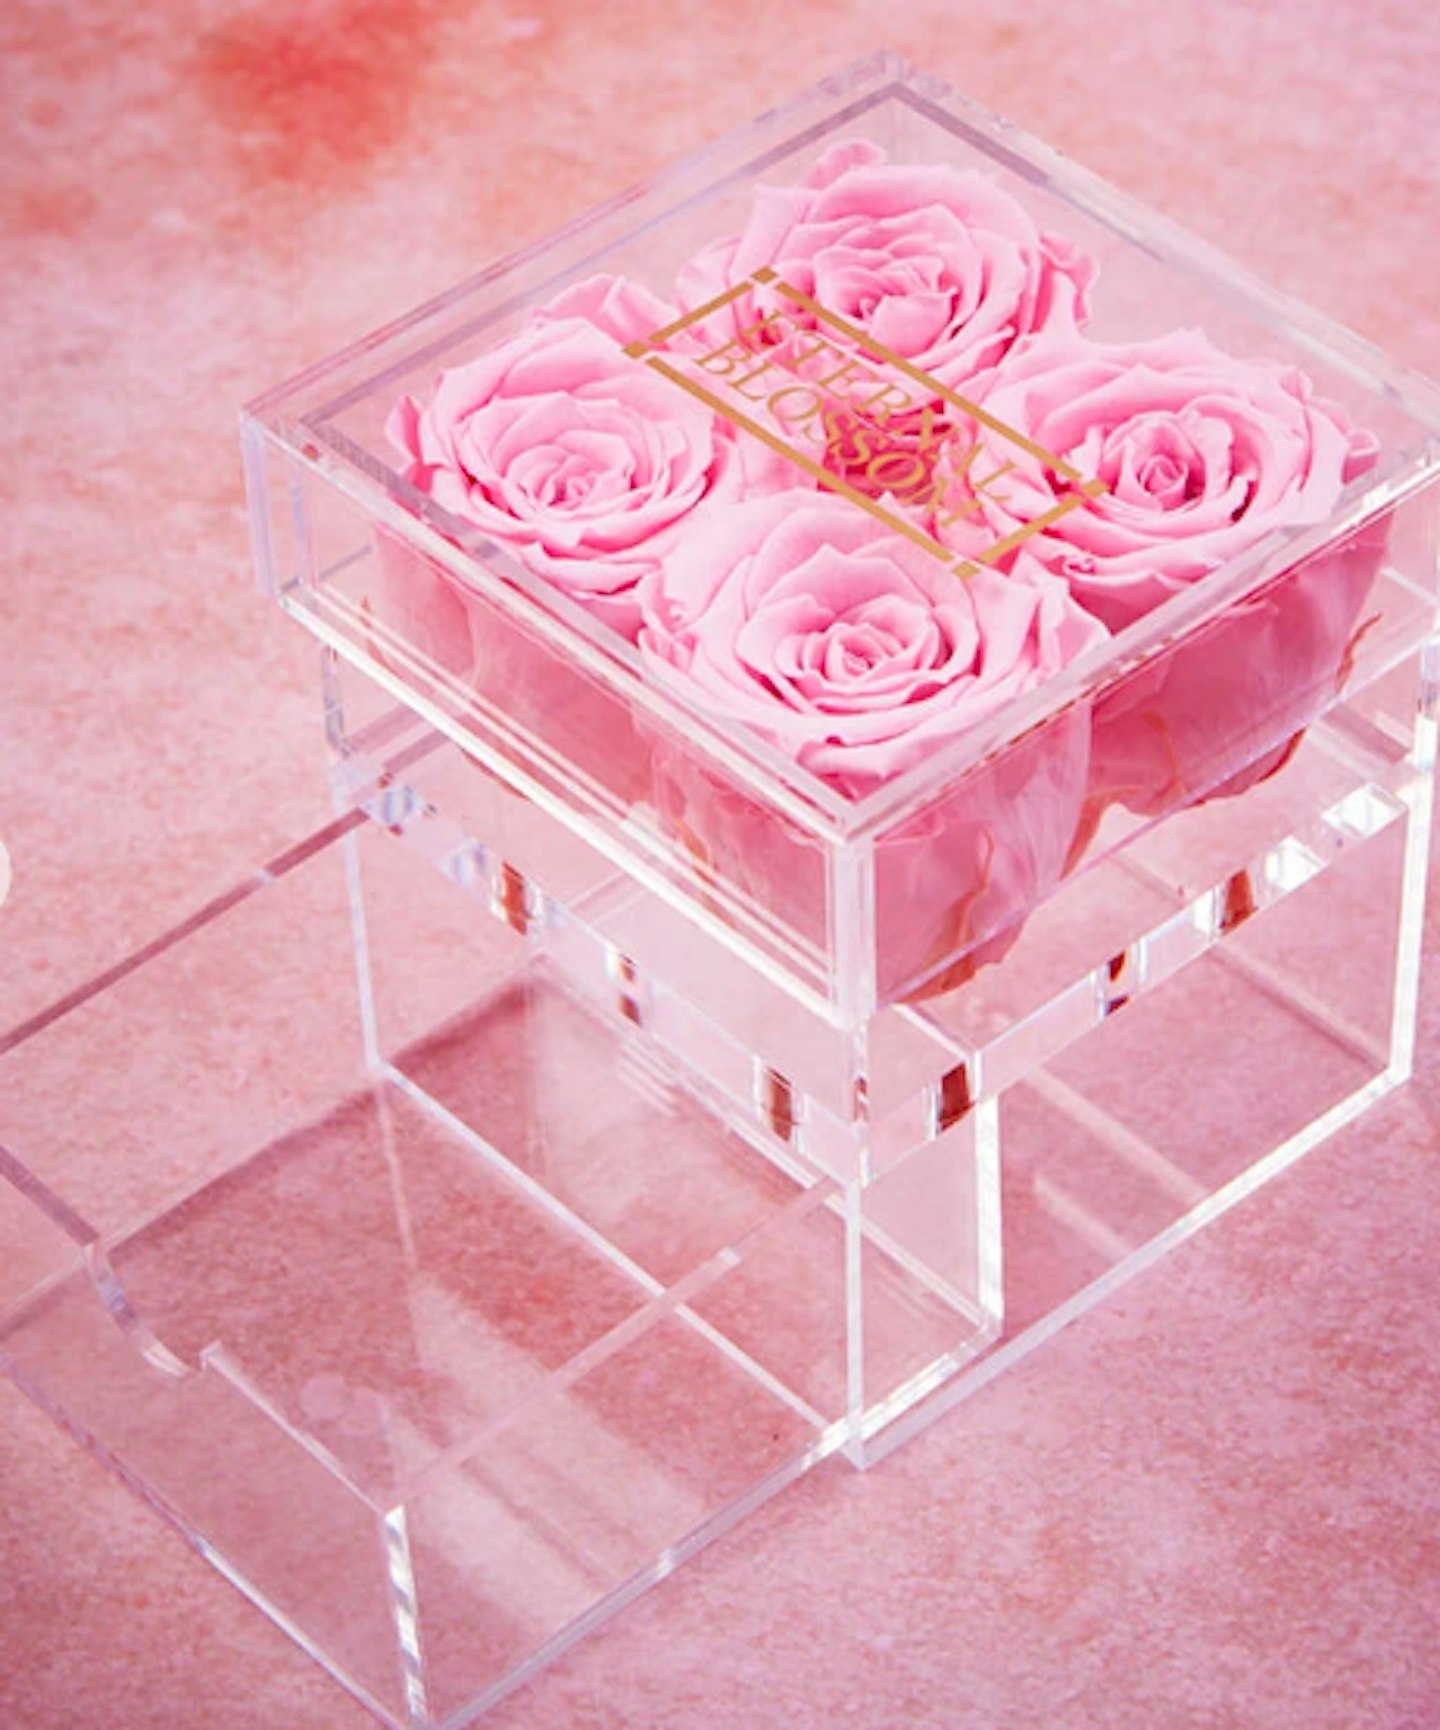 Roses make-up box